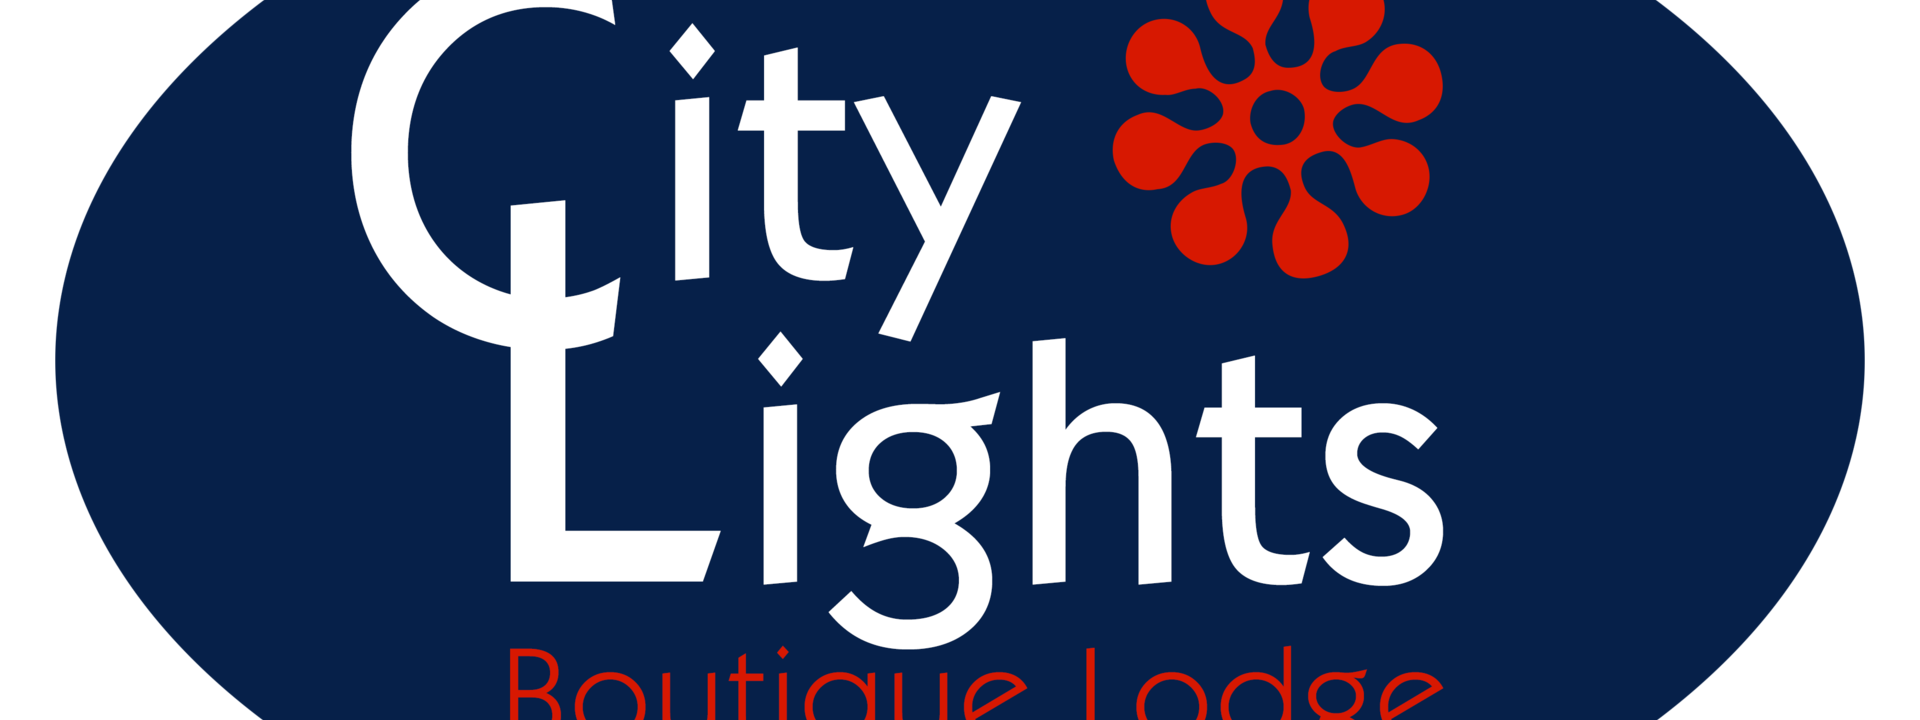 Logo: City Lights Boutique Lodge